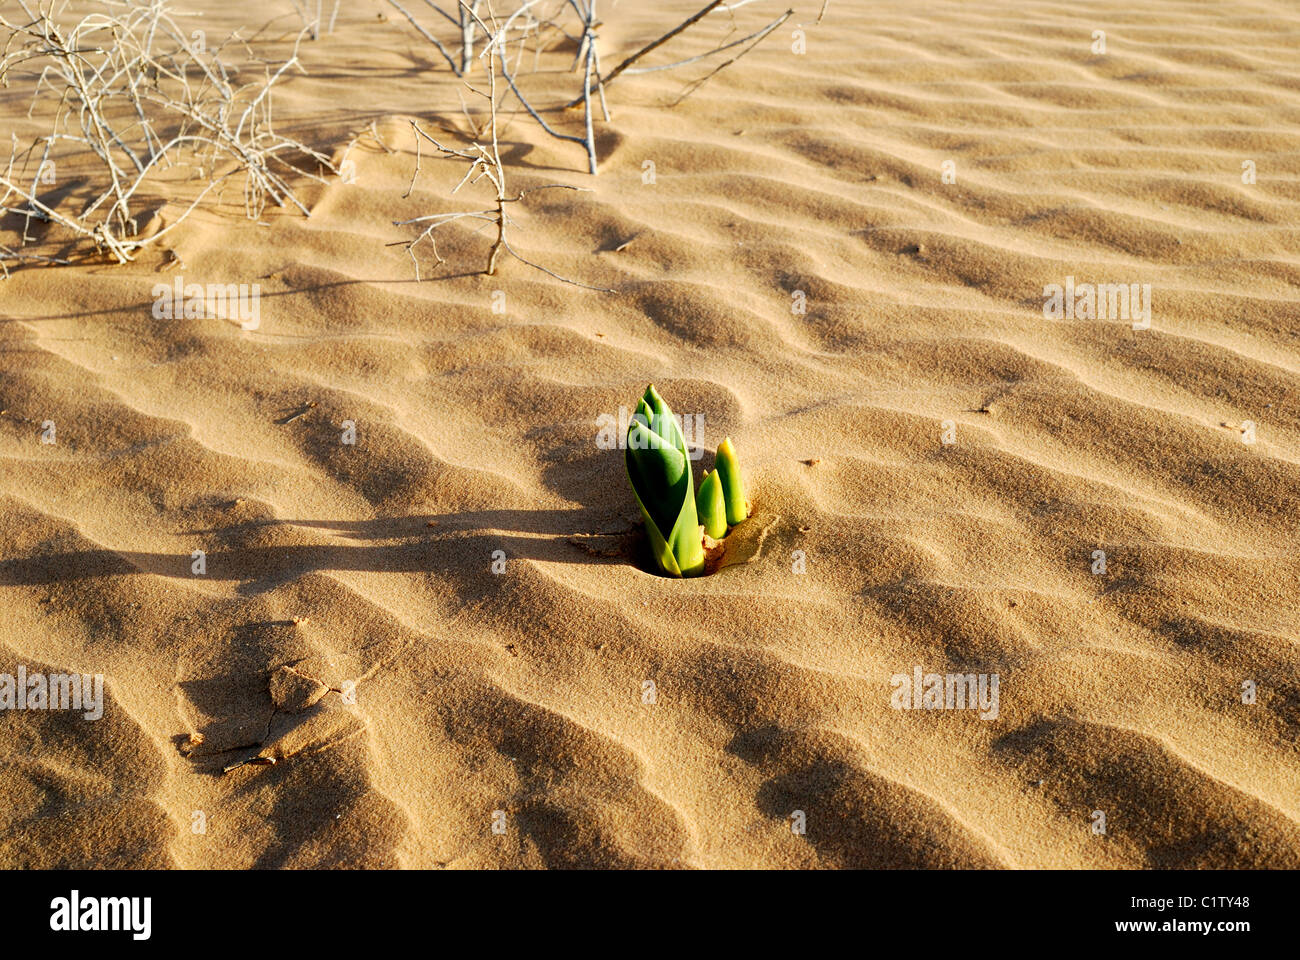 Printemps en désert. Plante verte dans le désert de sable. Prises dans le désert du Néguev, en Israël. Banque D'Images